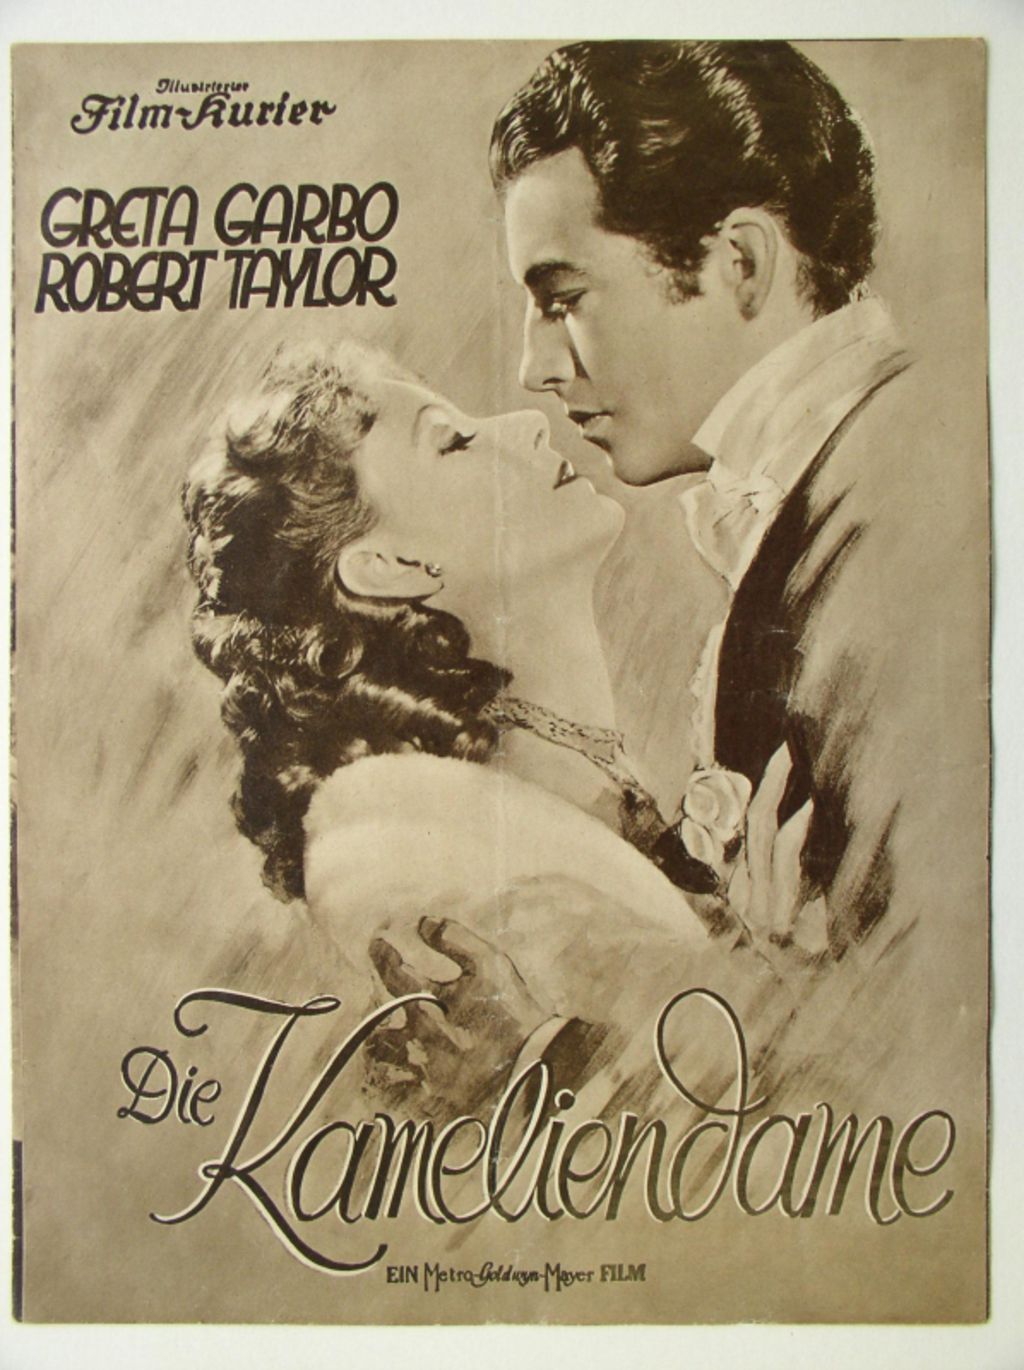 Filmzeitschrift zum MGM-Film "Die Kameliendame", um 1938